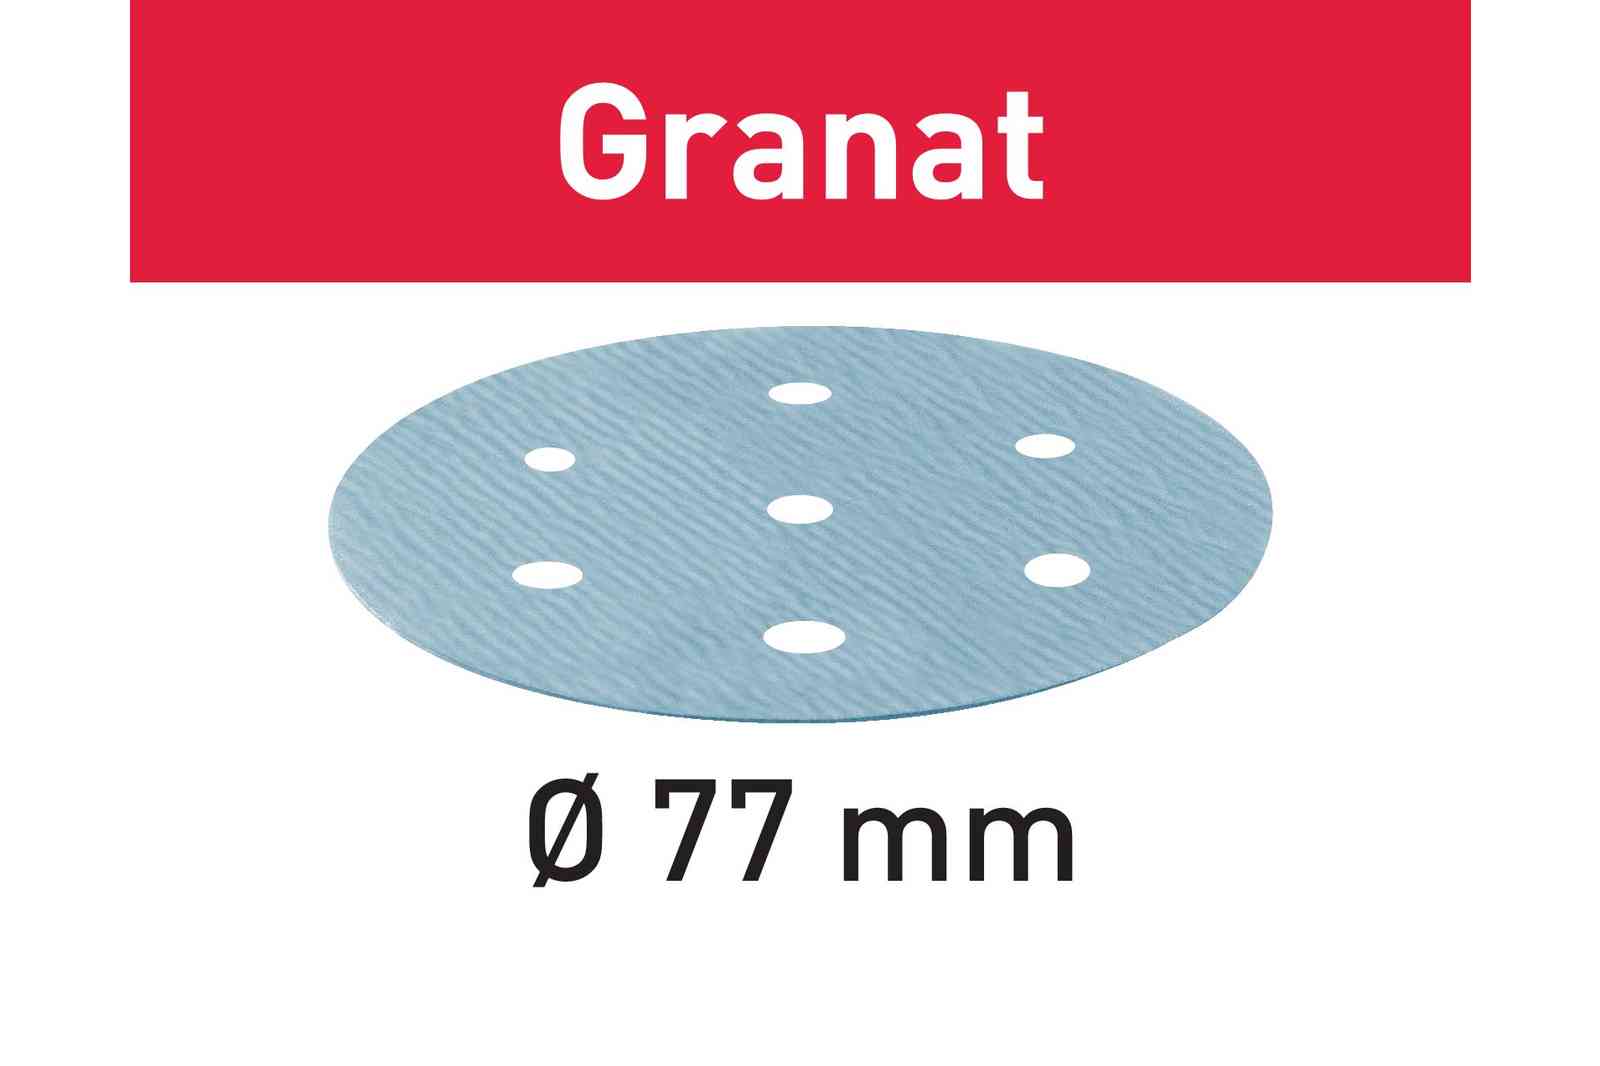 FESTOOL Schleifscheiben Granat Ø 150mm StickFix Schleifmittel VOC Lacke Spachtel 